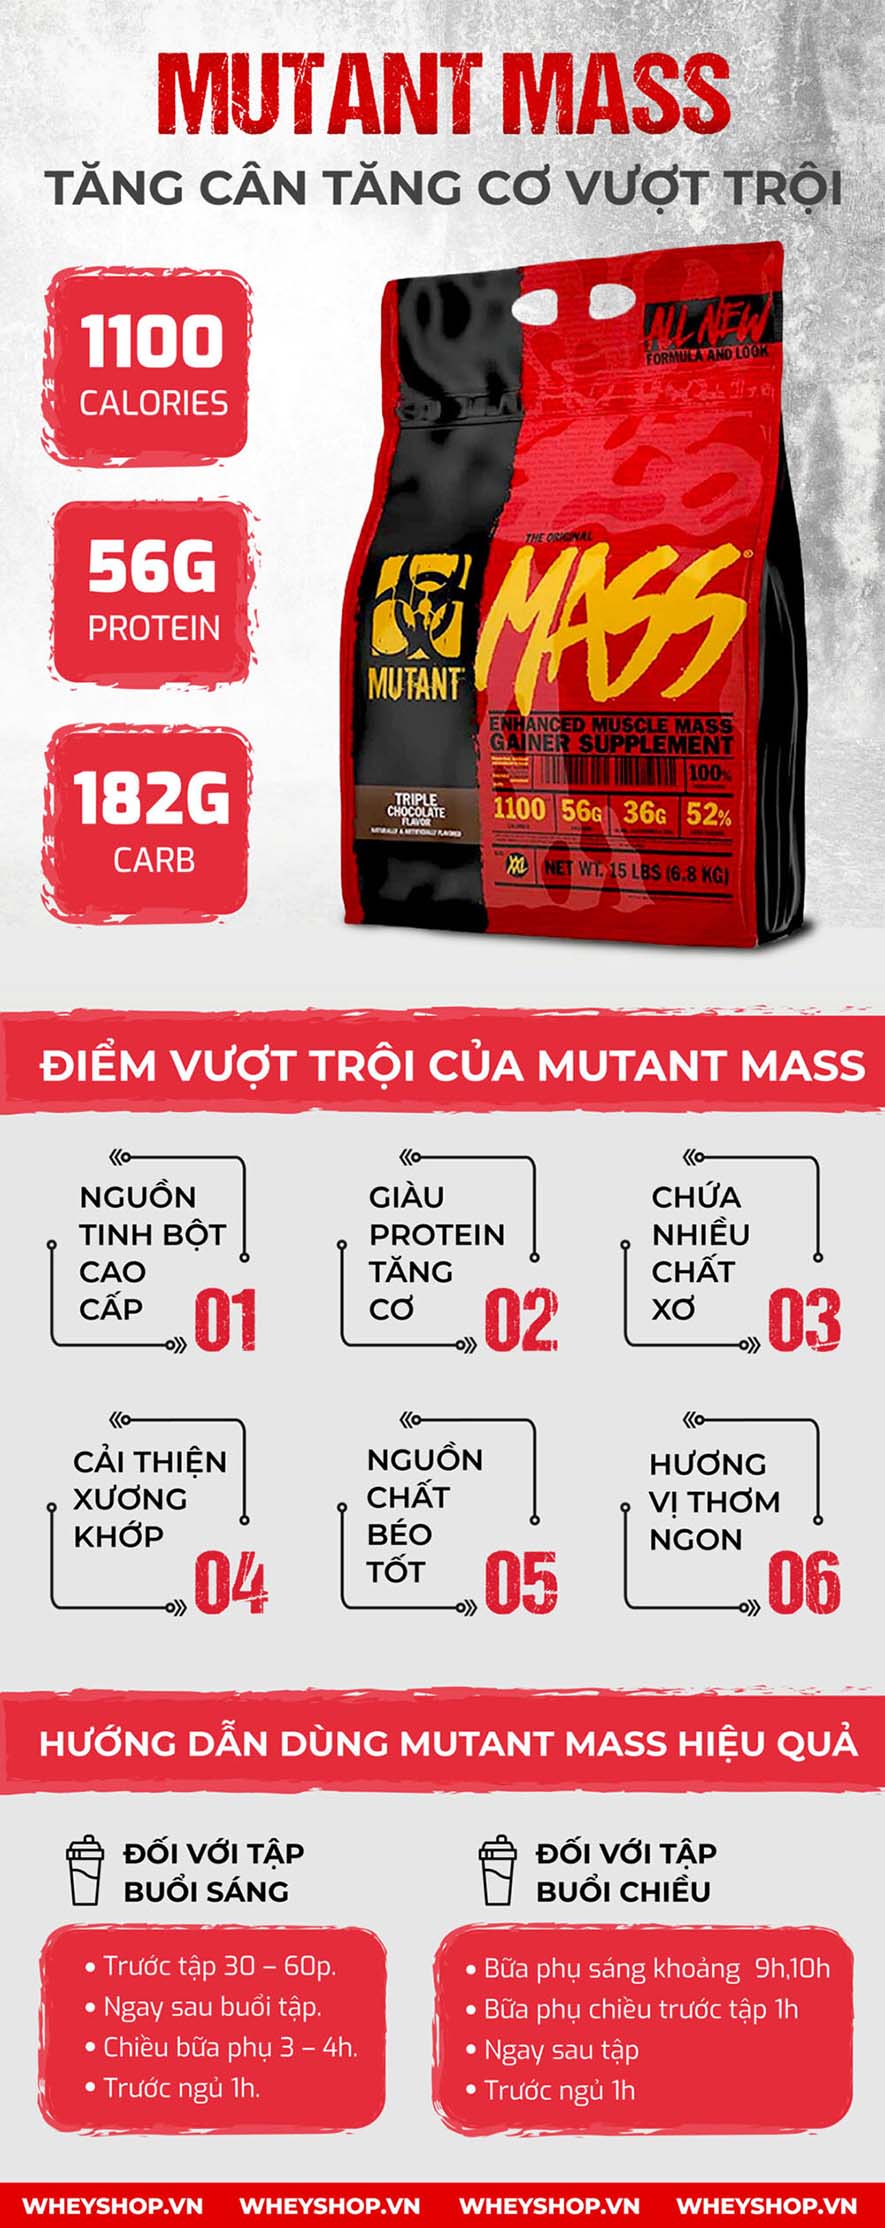 Mutant Mass là sản phẩm Sữa Tăng Cân nhanh, bán chạy hàng đầu trên thị trường hiện nay, cam kết nhập khẩu chính hãng, uy tín và giá tốt nhất Hà Nội, TpHCM